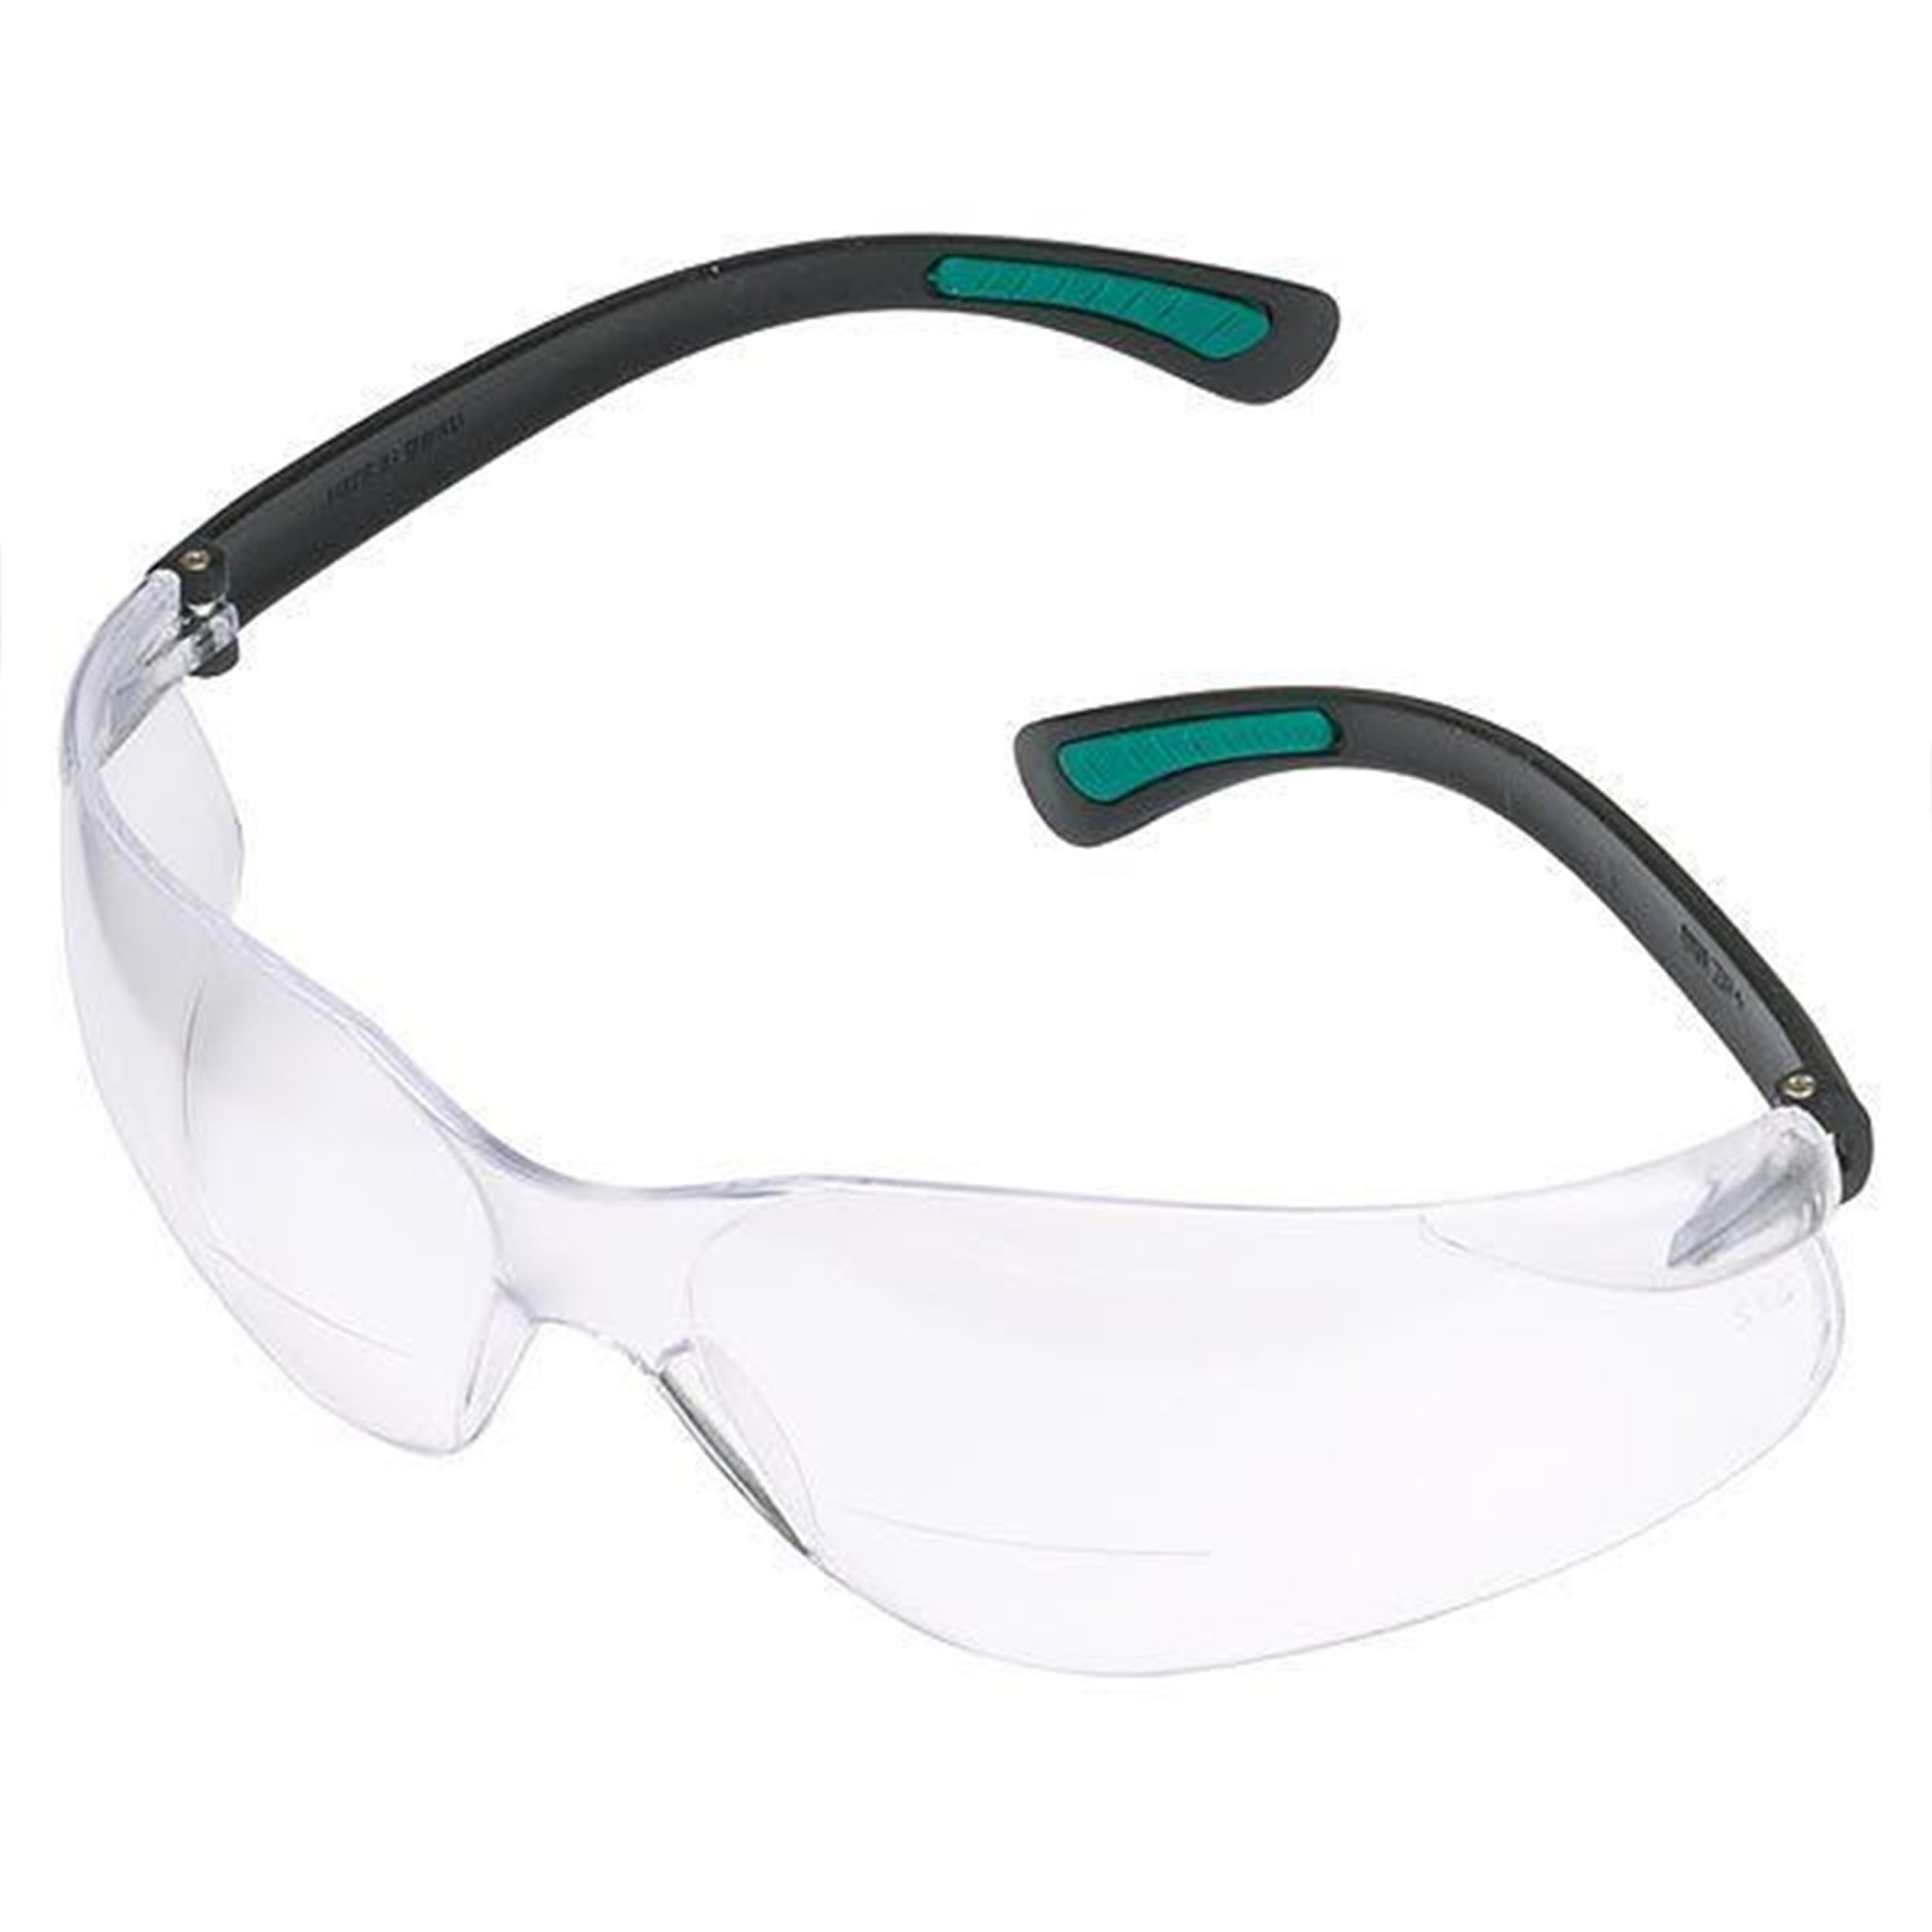 Workshop Safety Fastcap Bifocal Cat Eyes Safety Glasses Anti-Fog +3.0 Diopter 